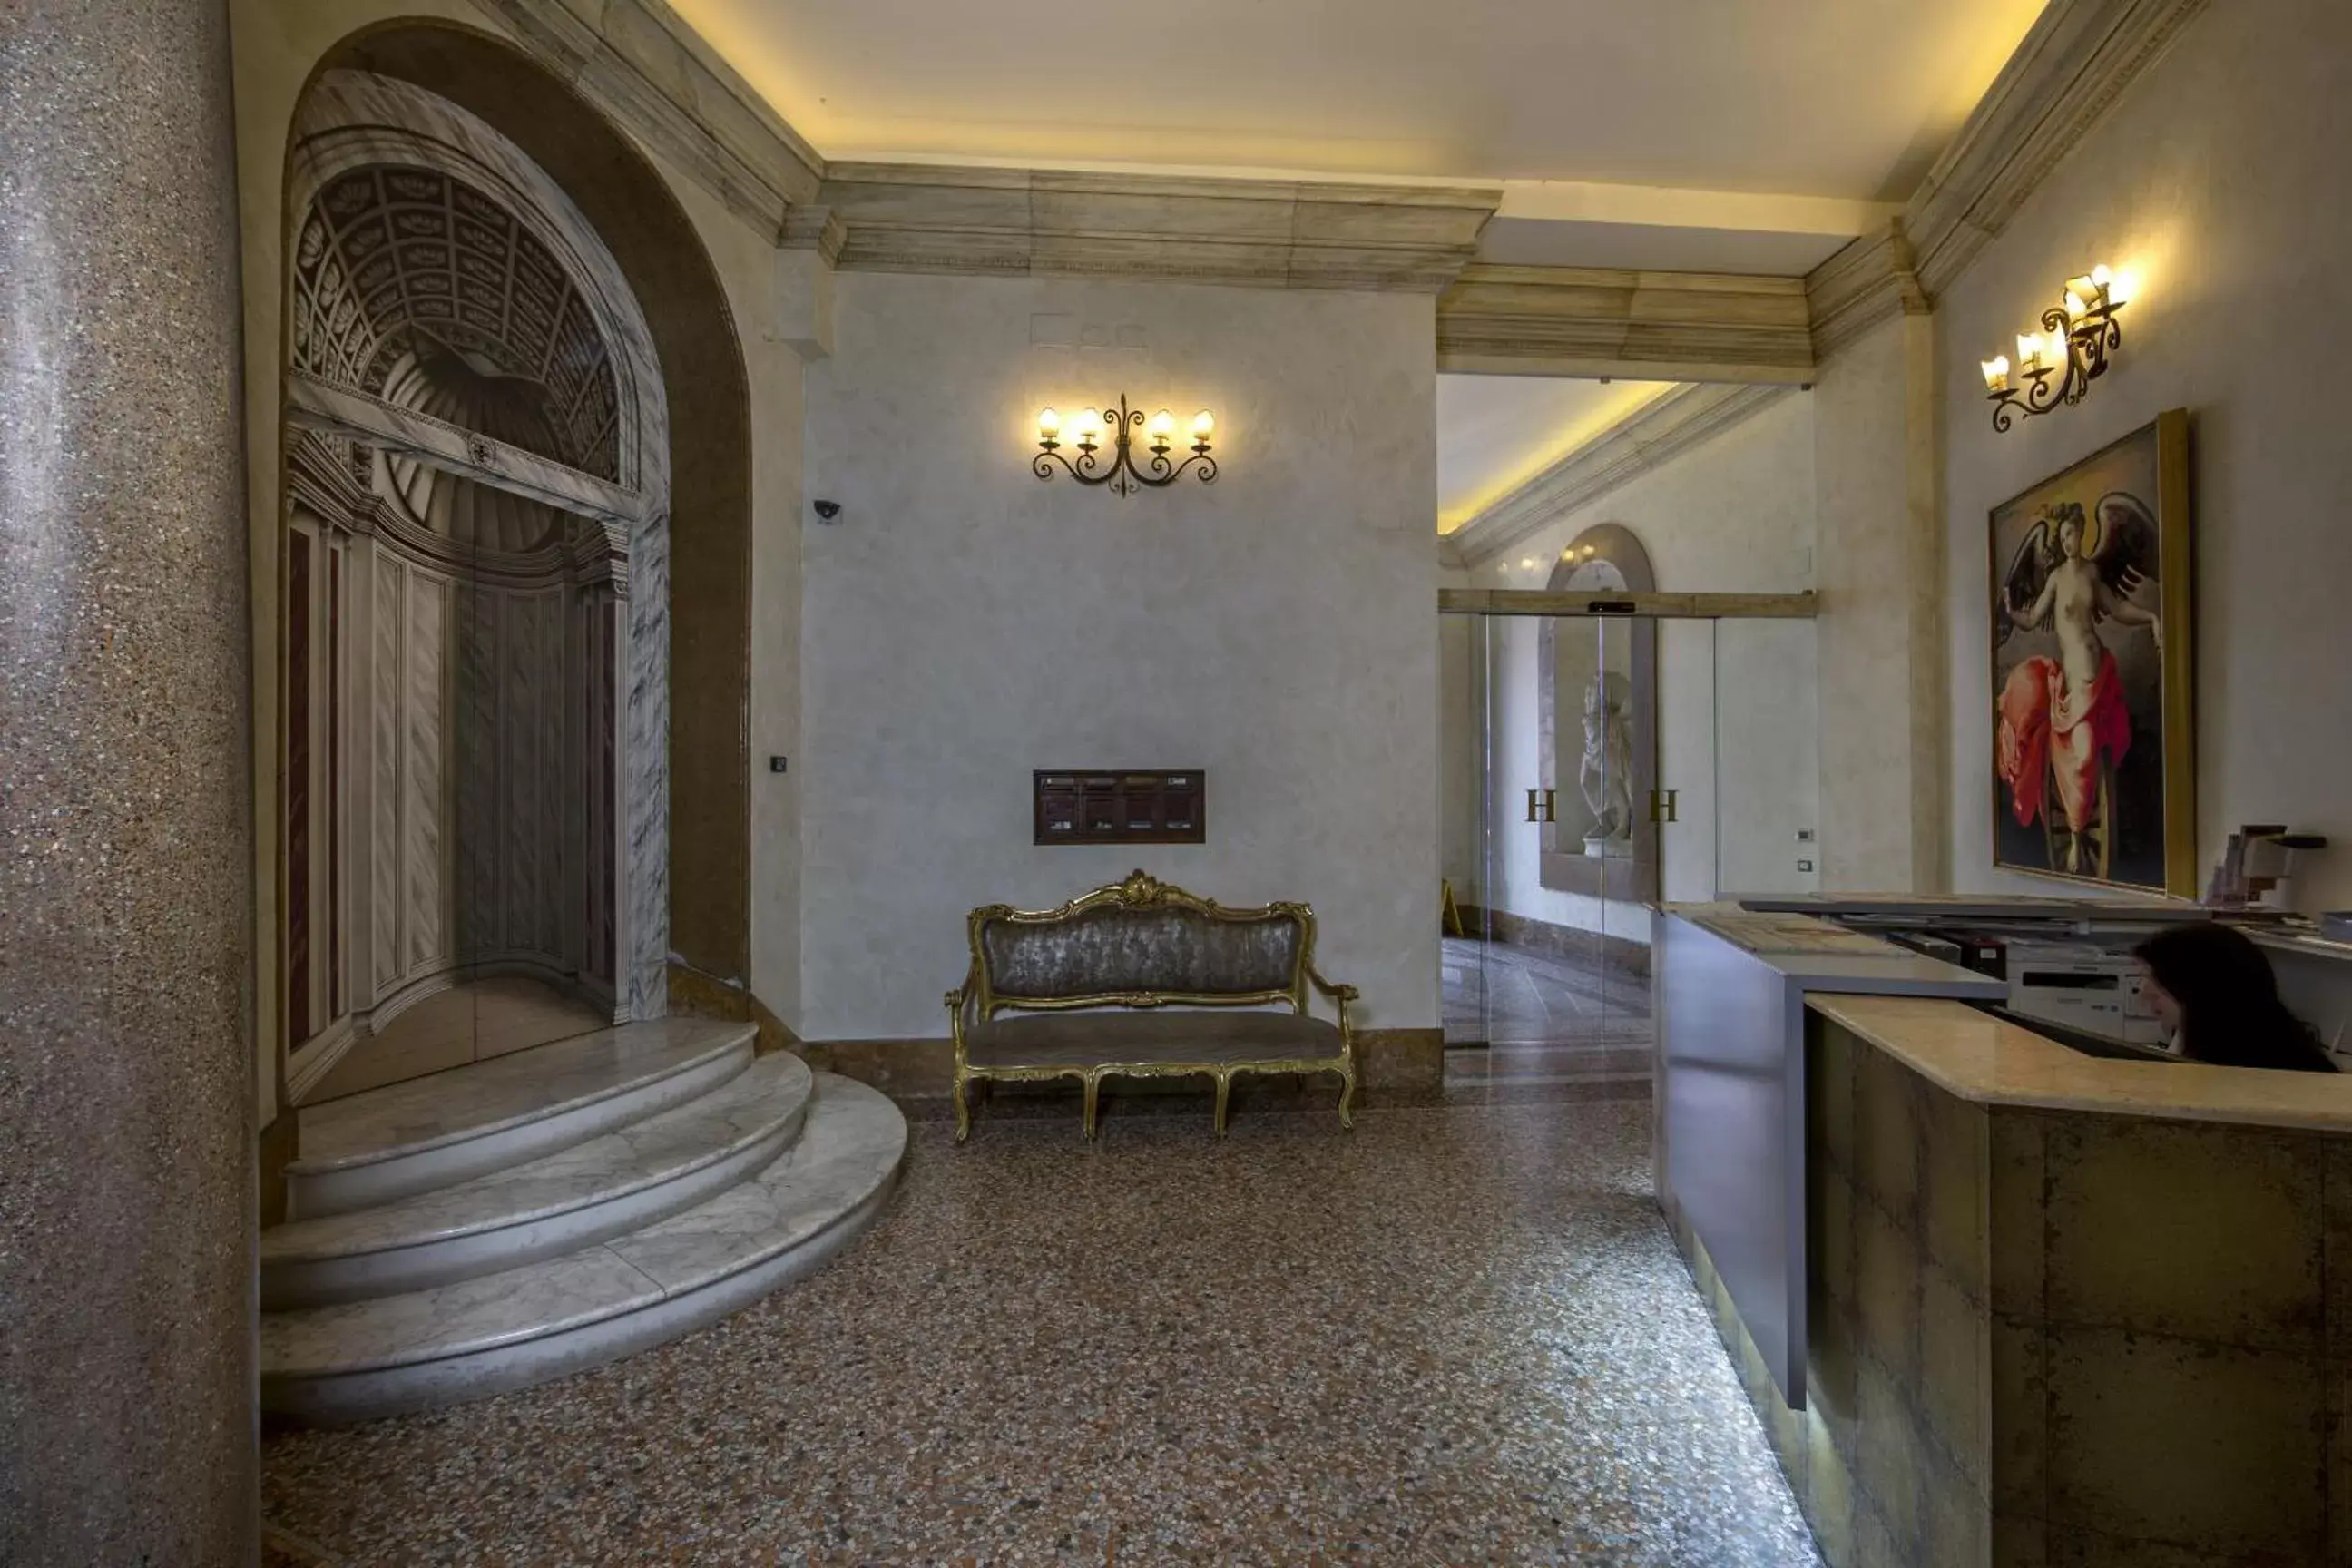 Lobby or reception in Antica Dimora Delle Cinque Lune